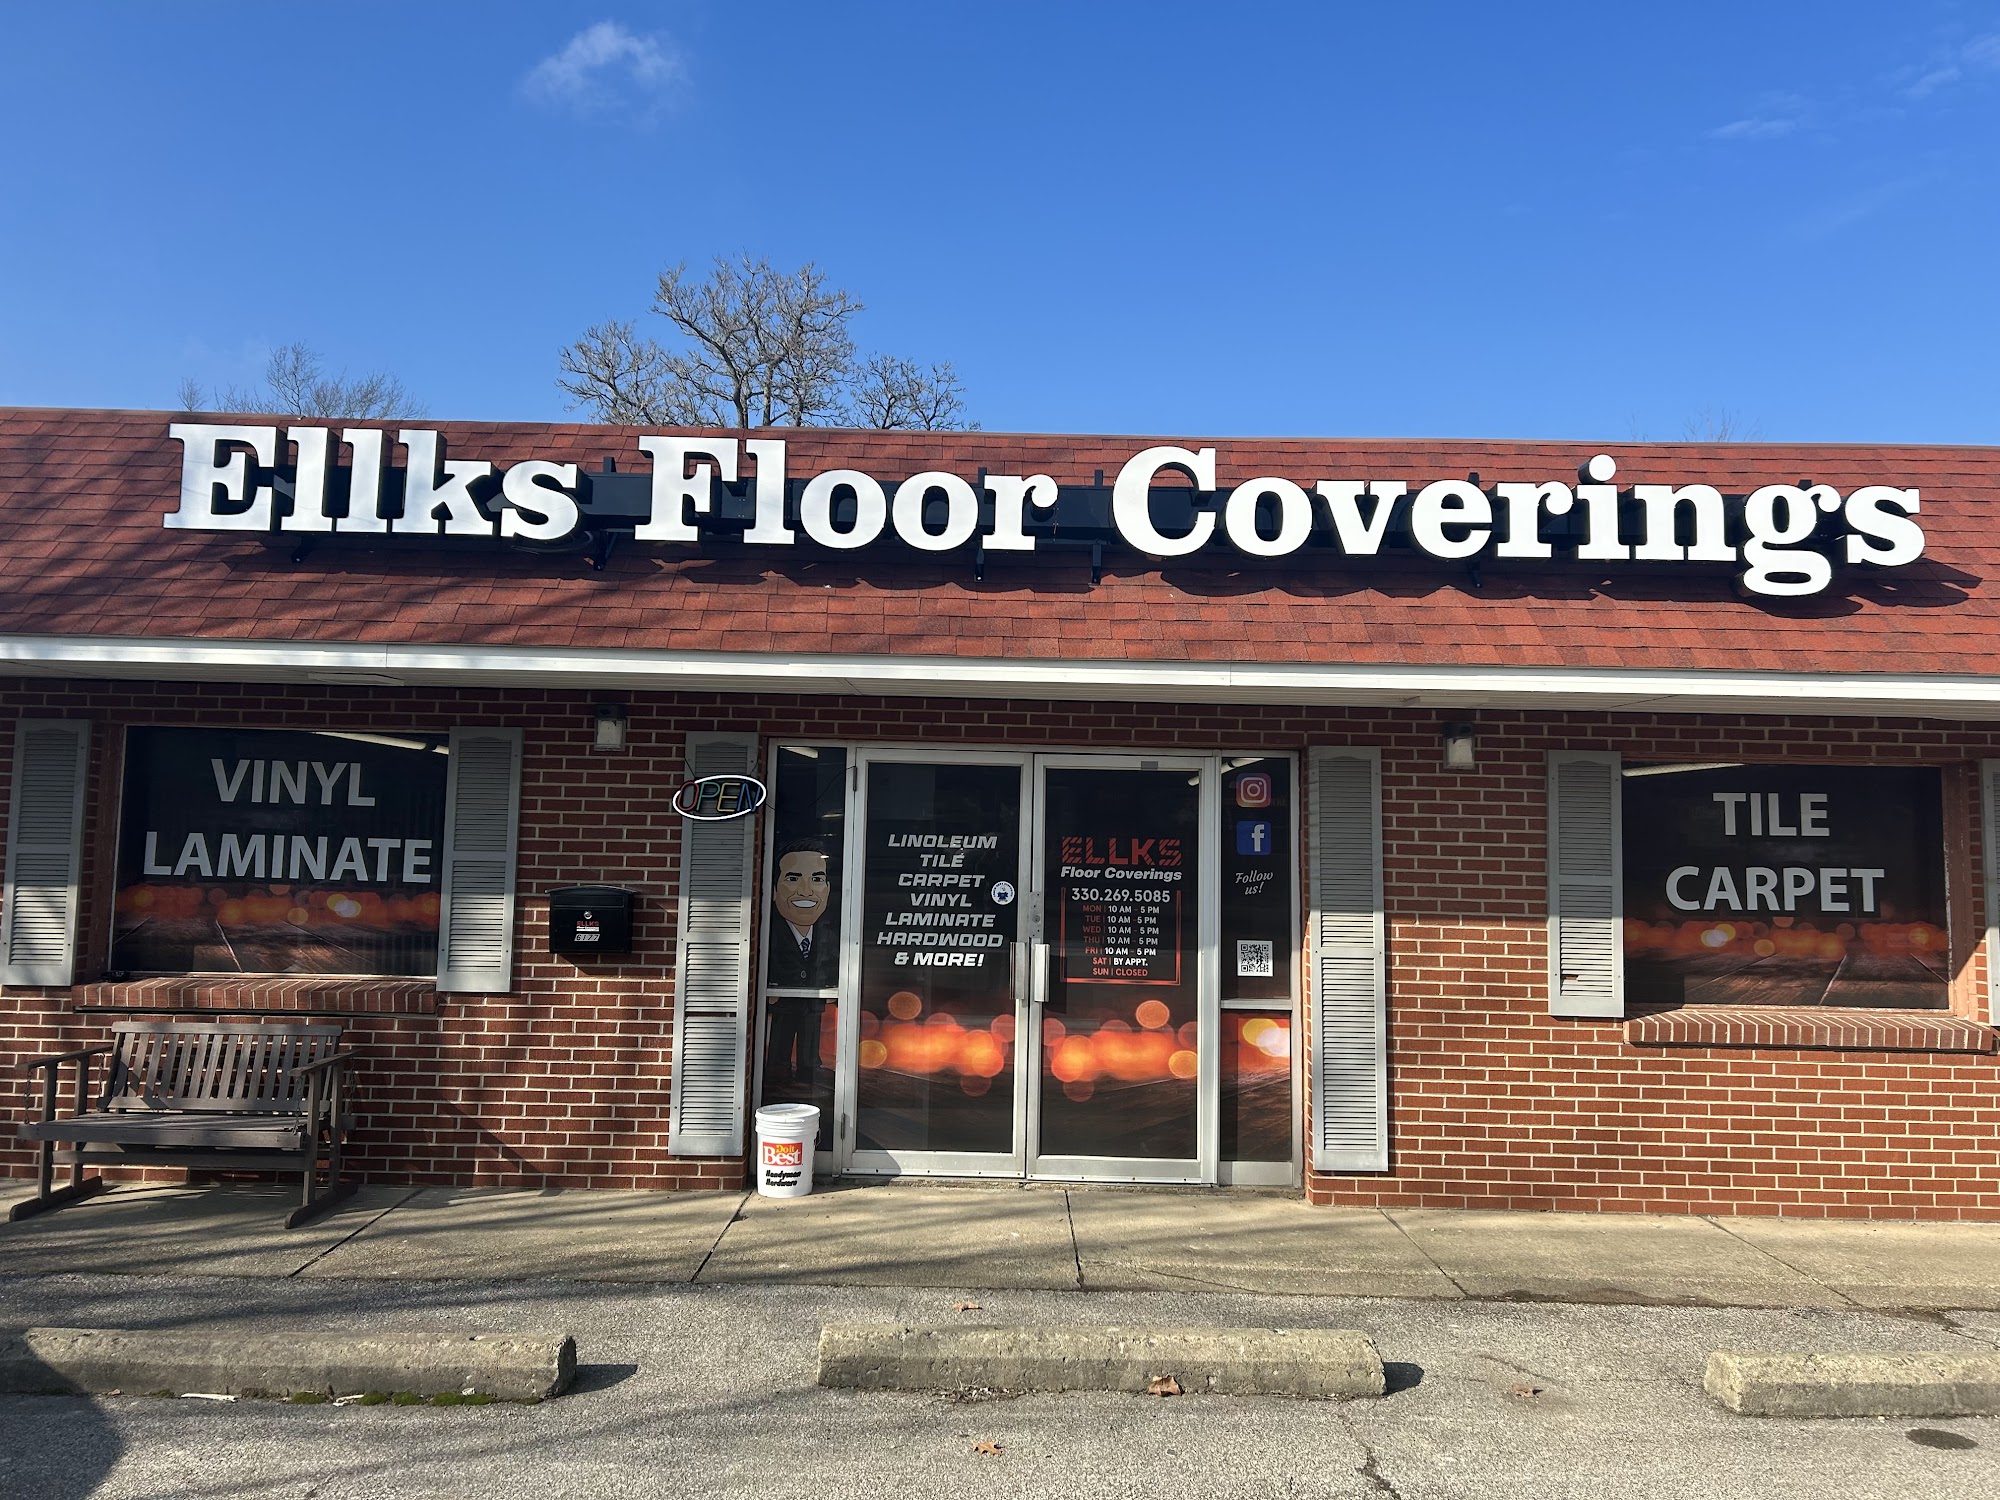 Ellks Floor Coverings